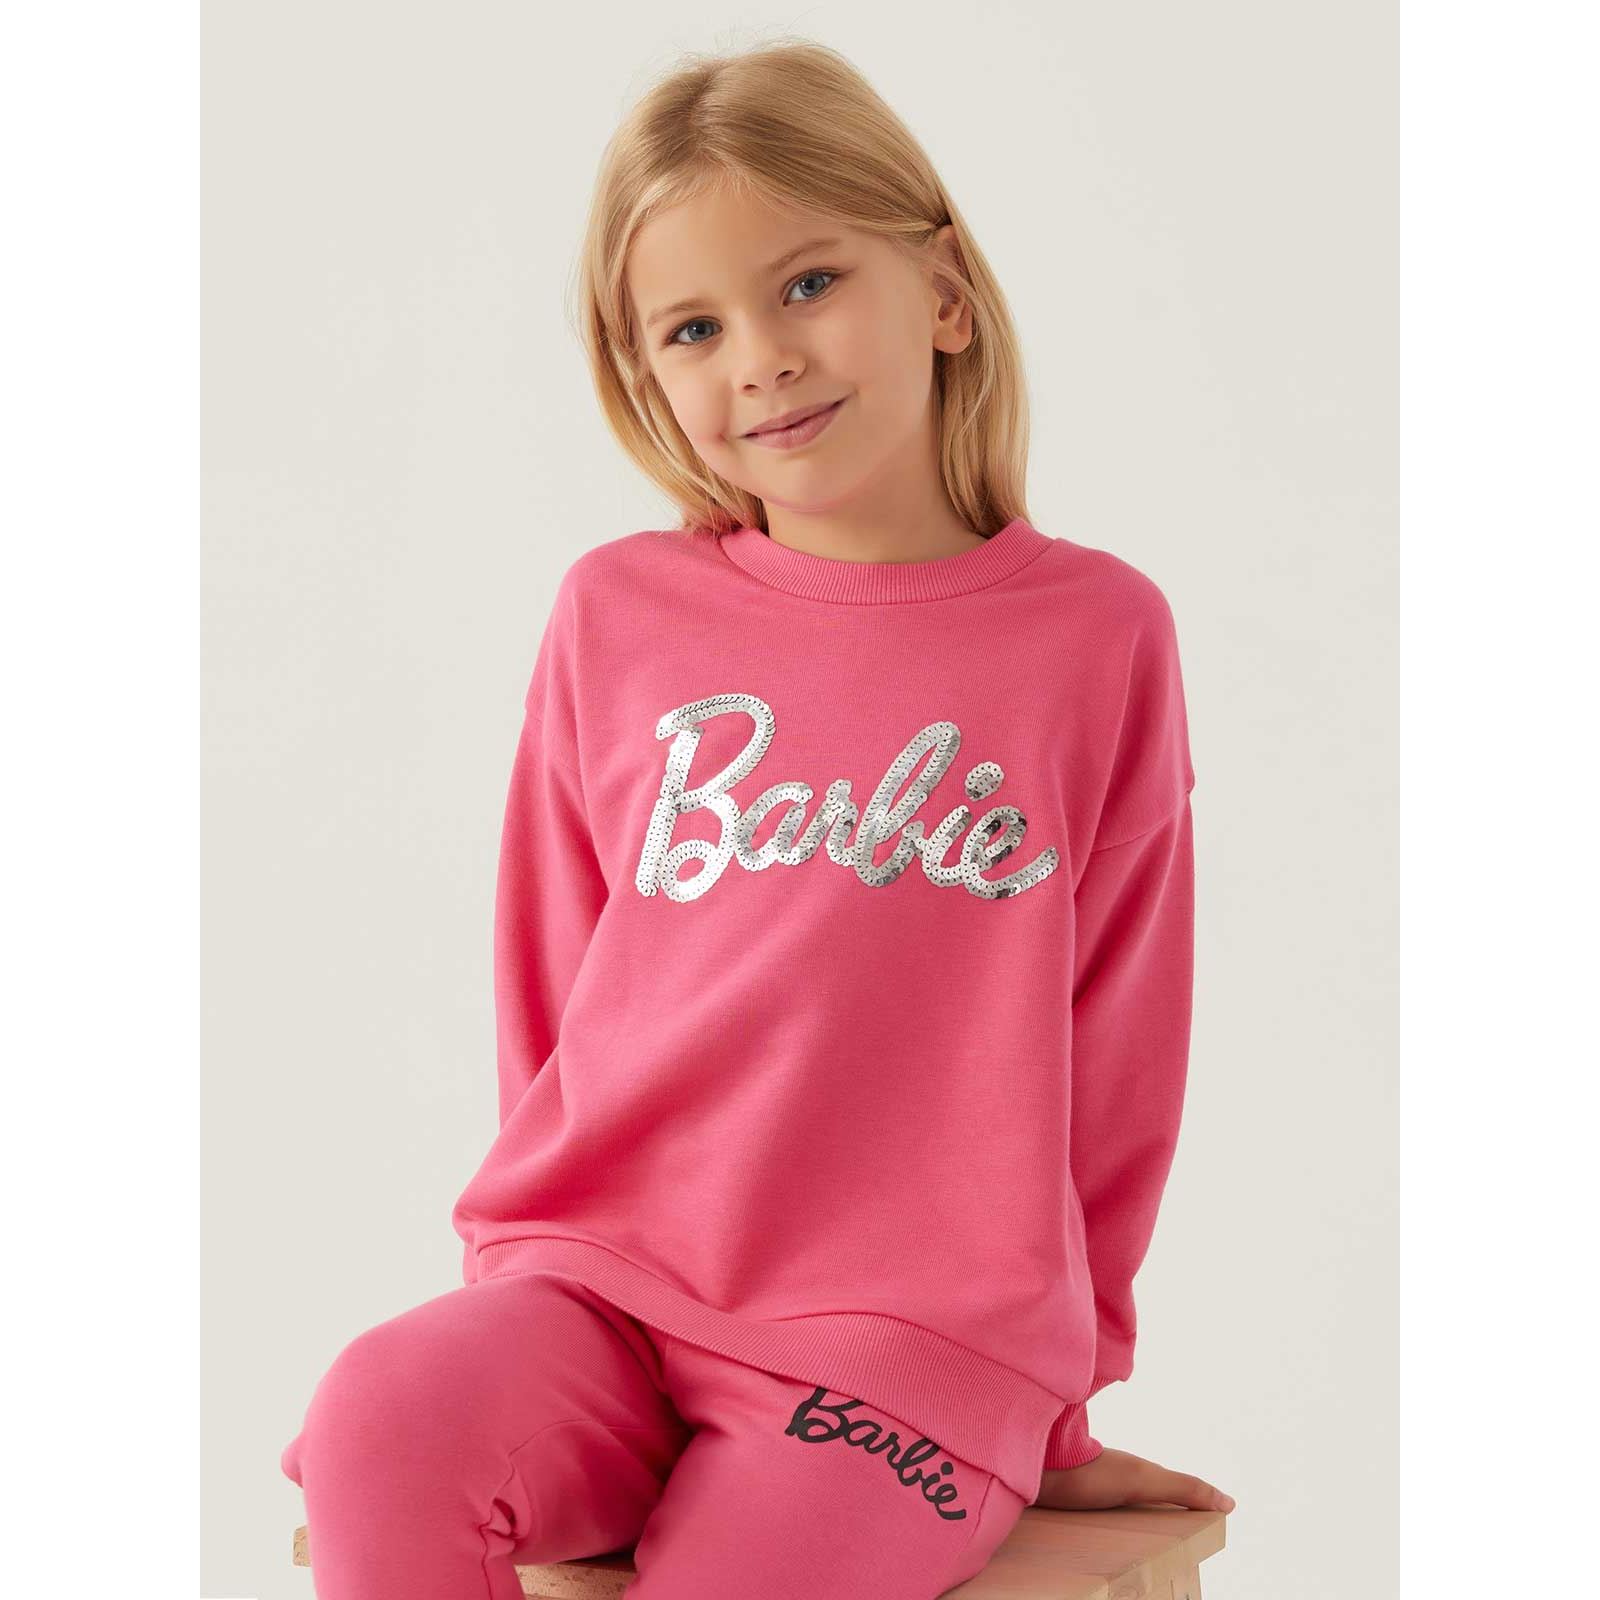 Barbie Kız Çocuk Sweatshirt 3-7 Yaş Açık Fuşya